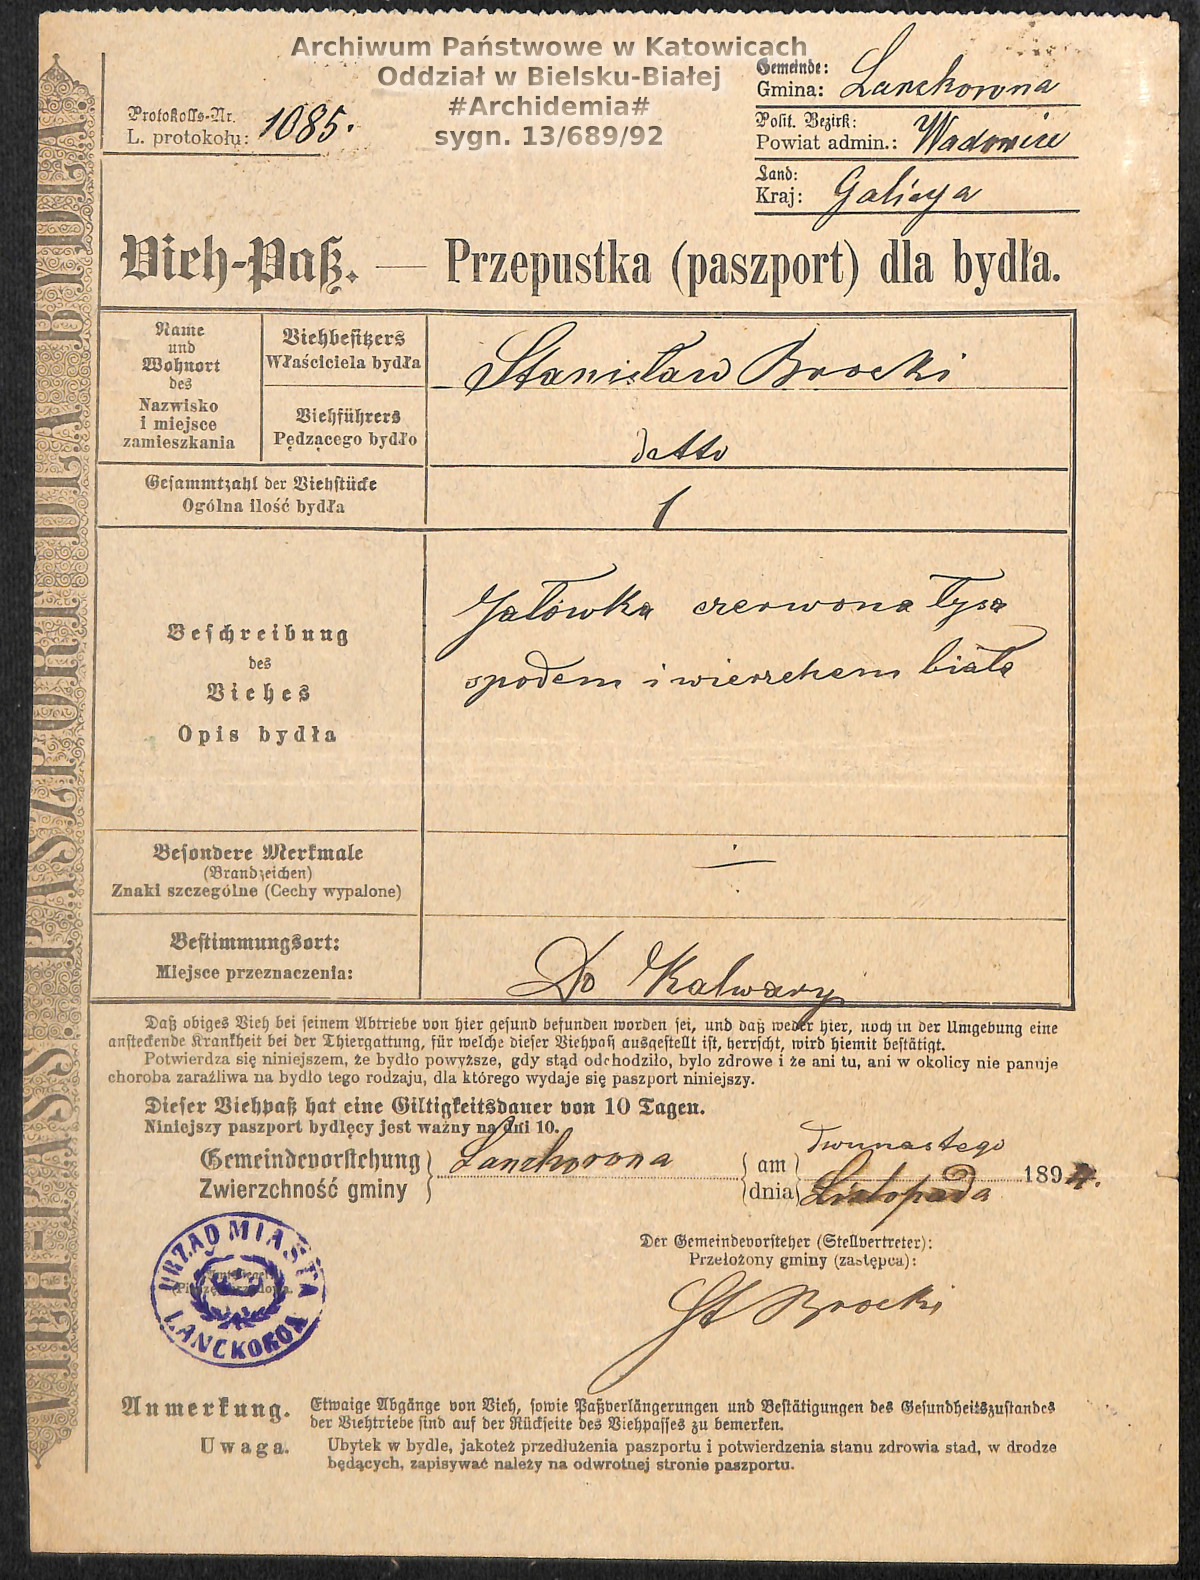 Paszport dla bydła - źródło; Archwium Państwowe